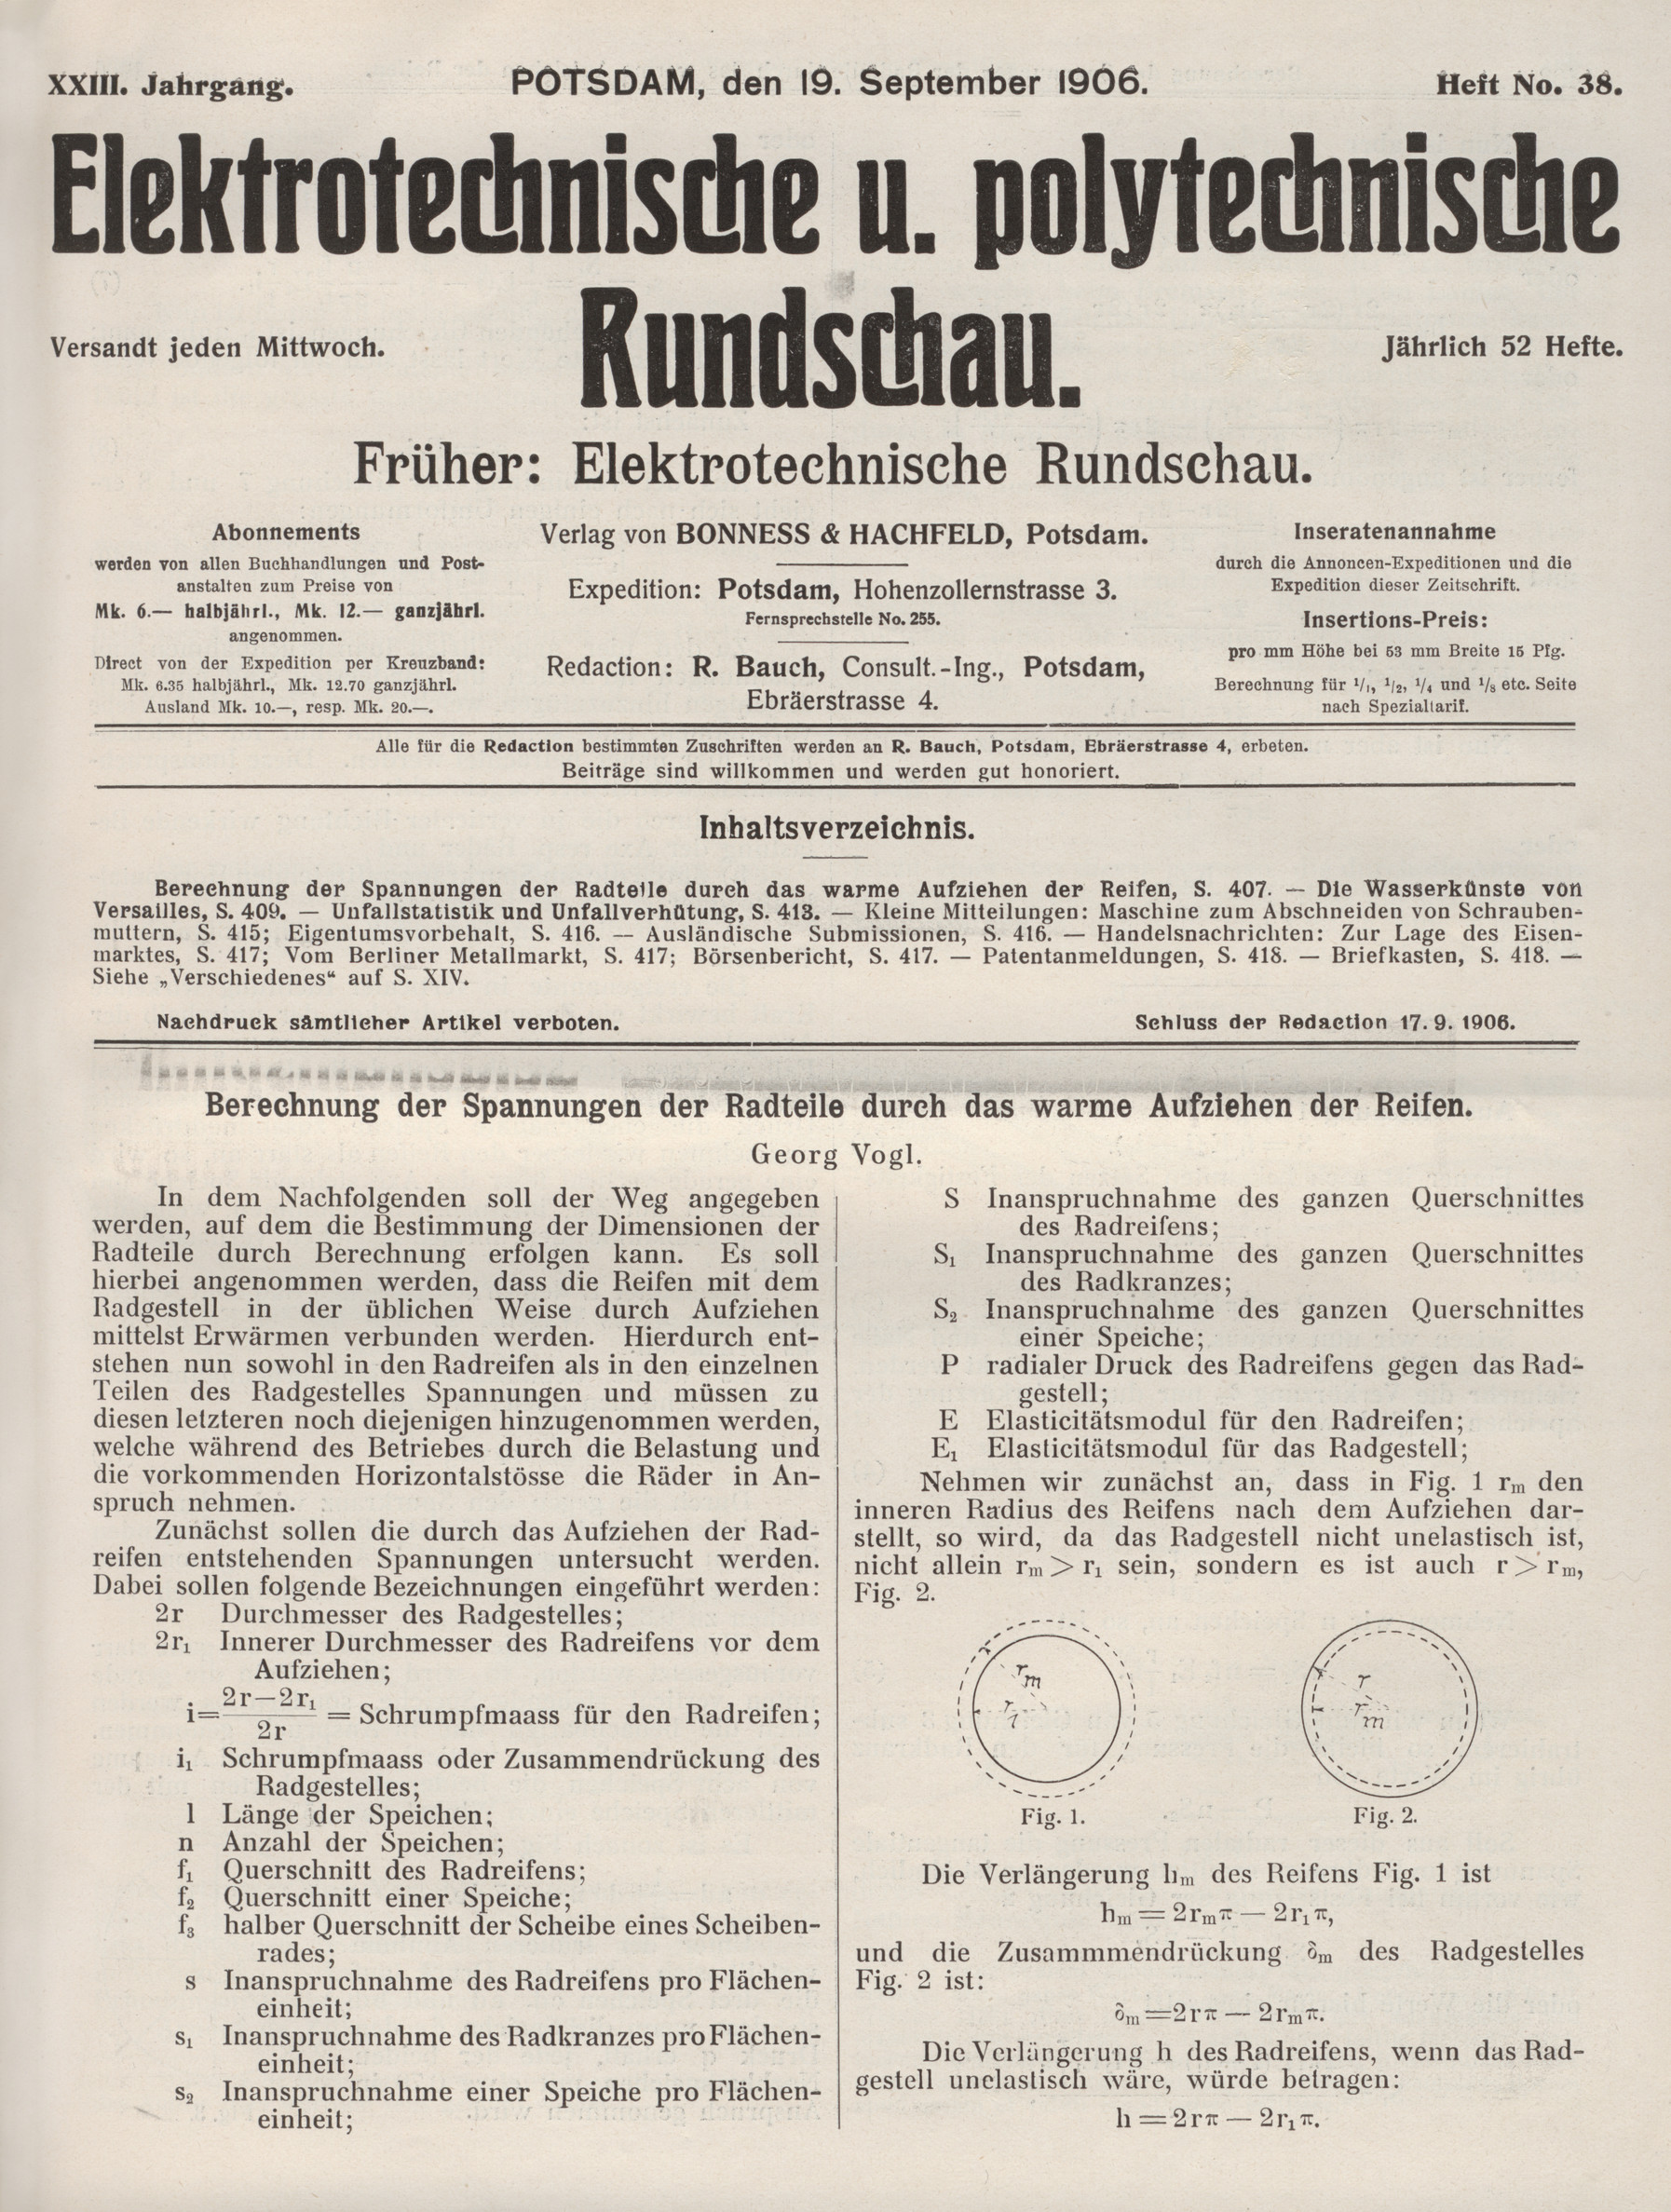 Elektrotechnische und polytechnische Rundschau, XXIII. Jahrgang, Heft No. 38